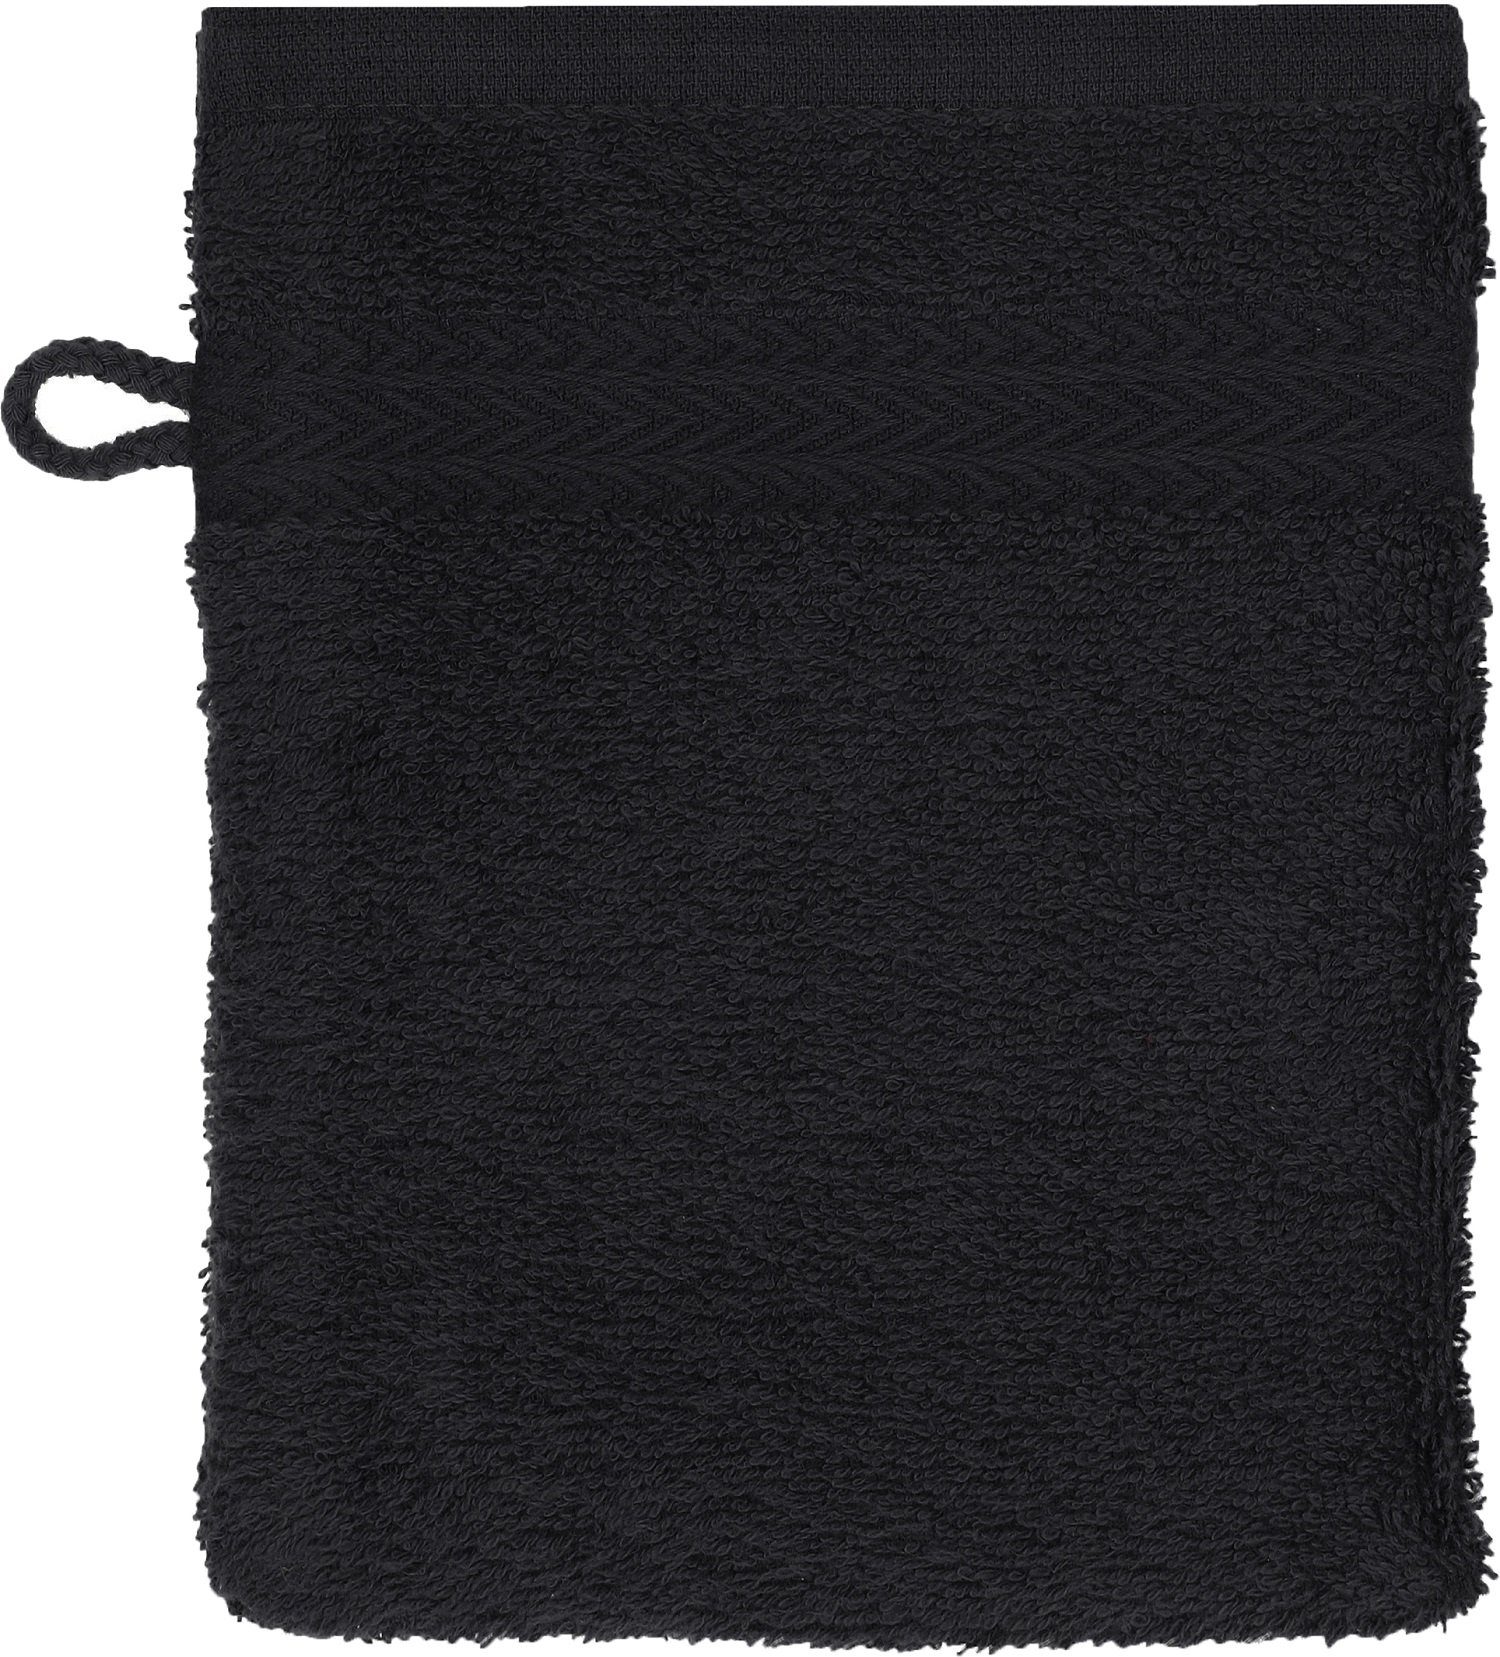 Betz Waschhandschuh 10 Stück Waschhandschuhe nussbraun Waschlappen cm und Set 16x21 Farbe schwarz Premium 100% Baumwolle